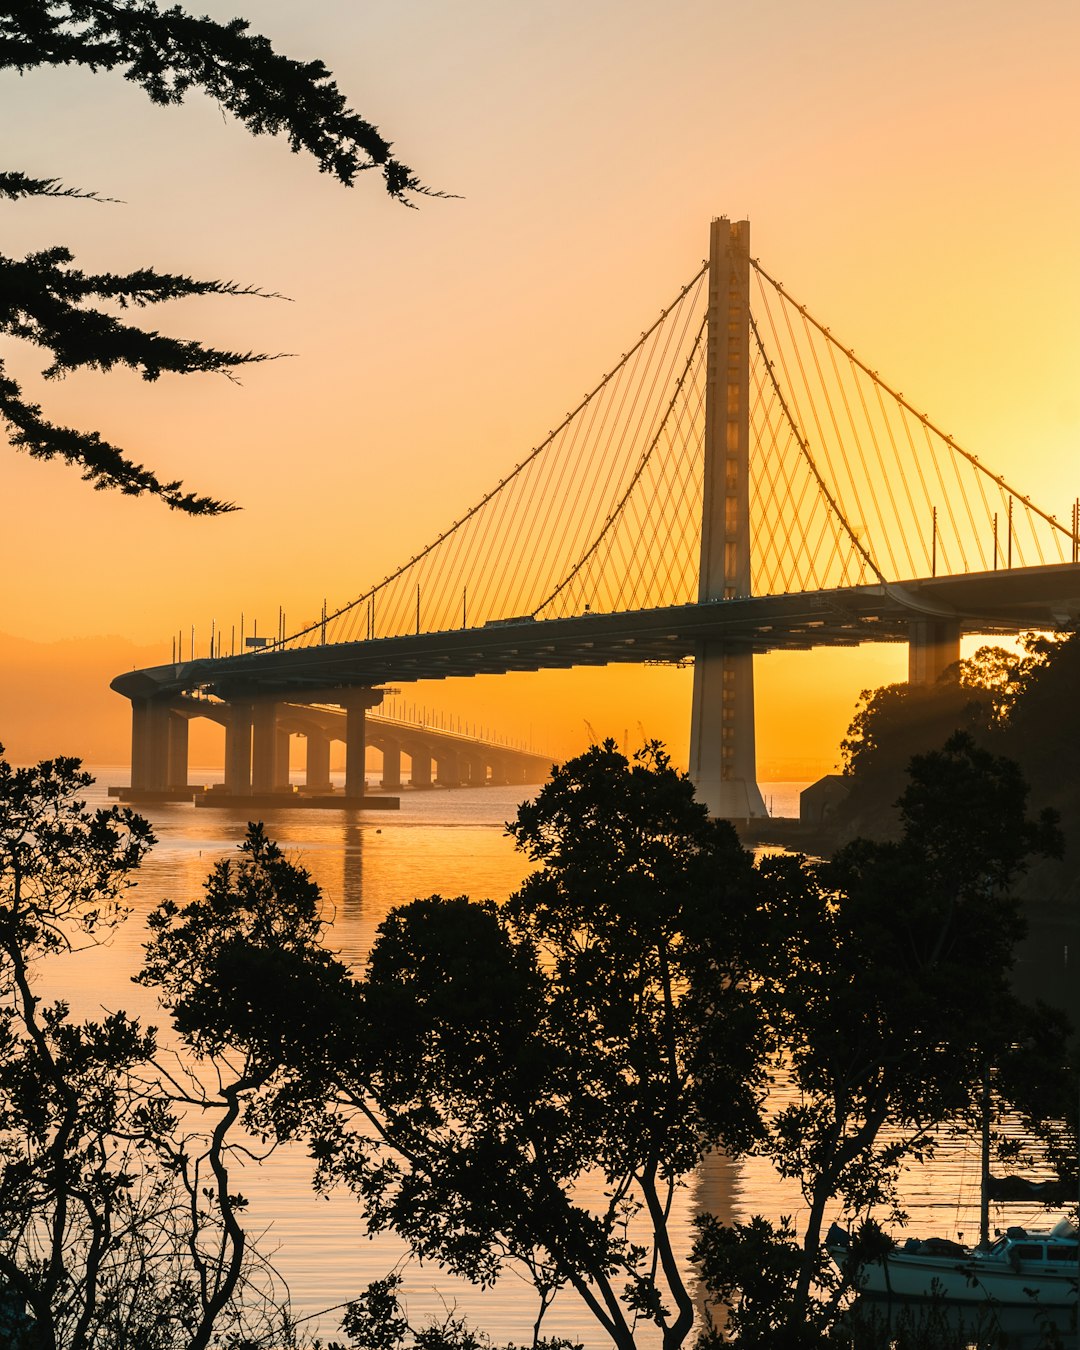 Suspension bridge photo spot San Francisco – Oakland Bay Bridge Embarcadero